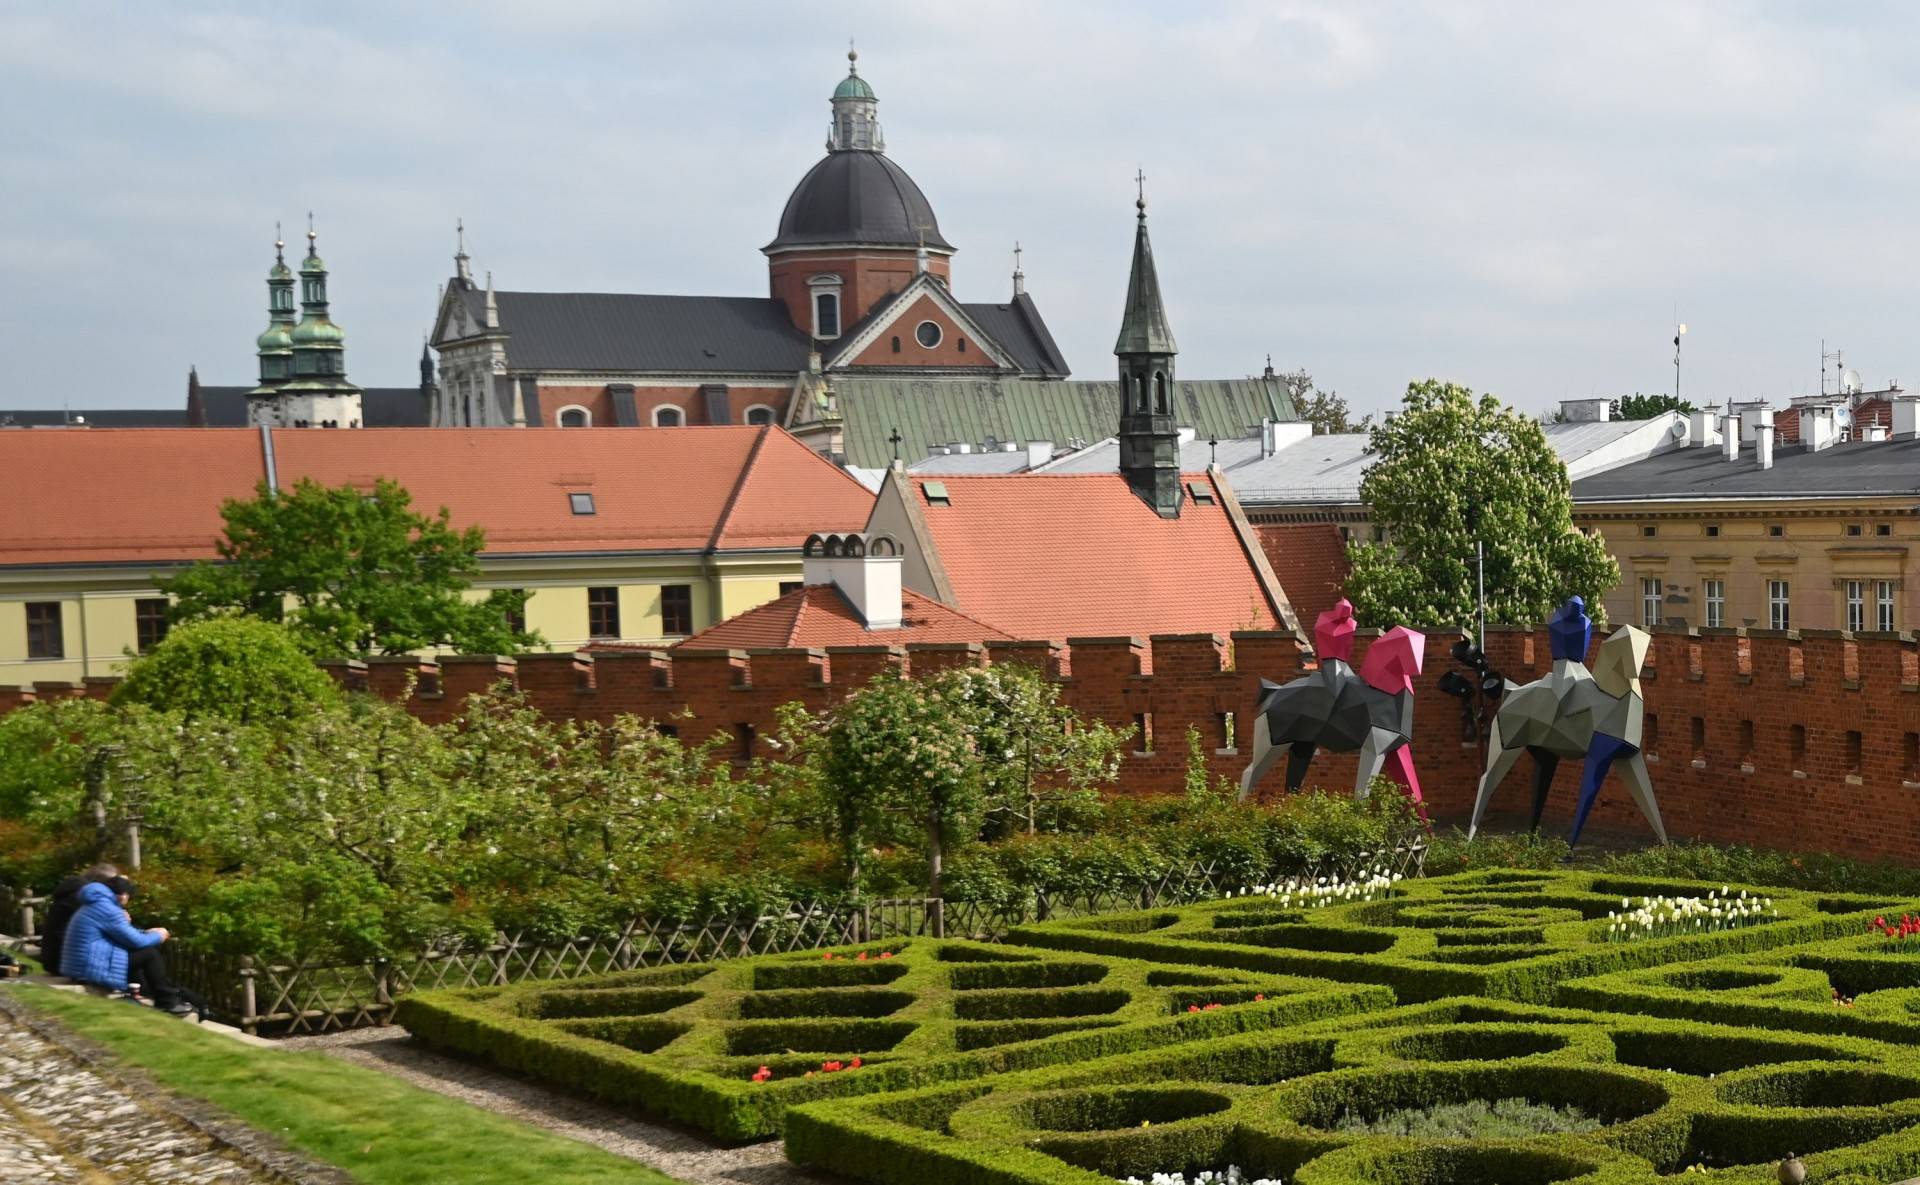 Kontrasty w ogrodzie królewskim na Wawelu. Intrygująca wystawa